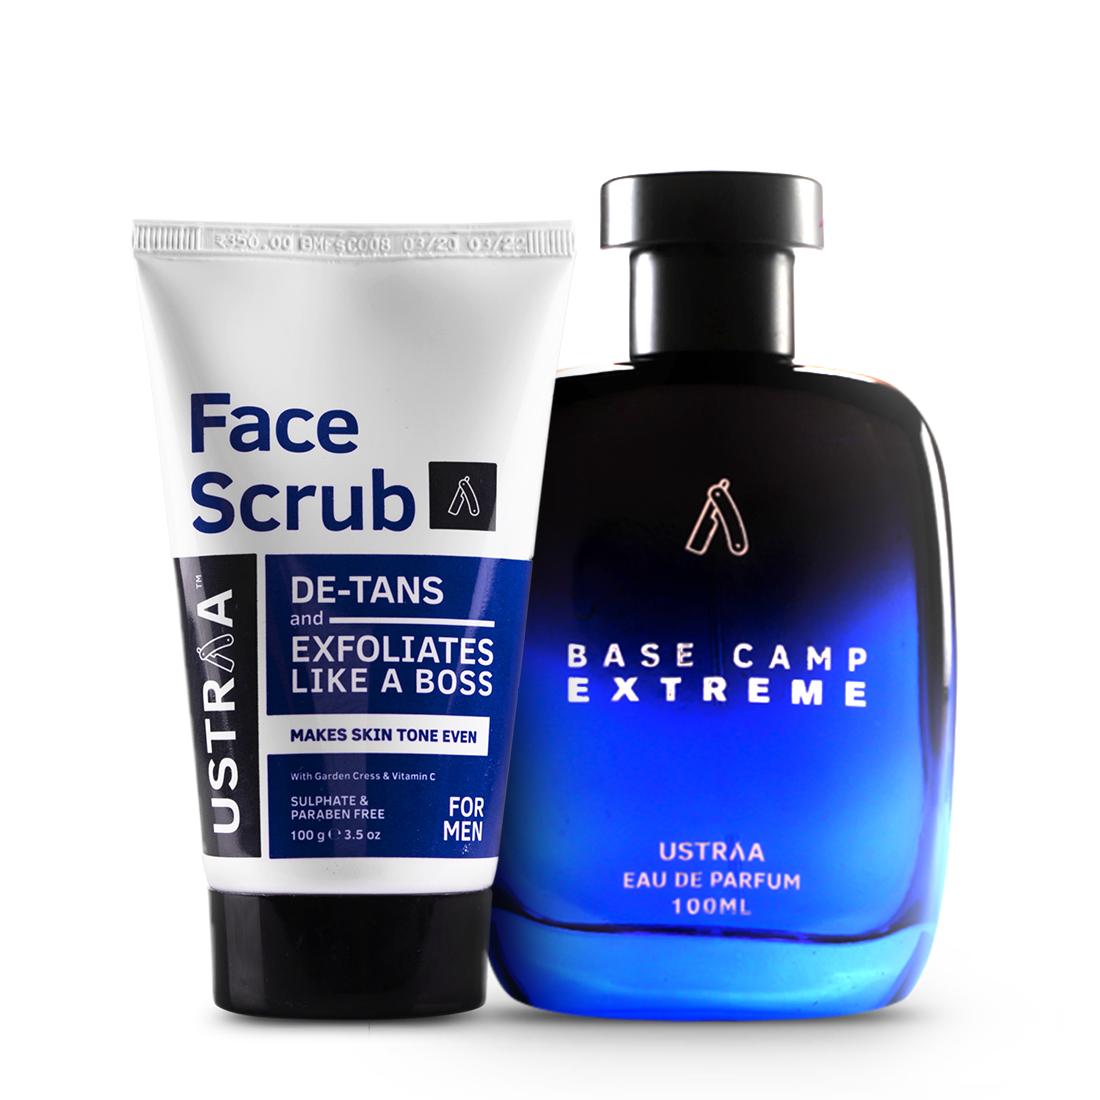 Base Camp Extreme EDP - Perfume for Men & De-Tan Face Scrub